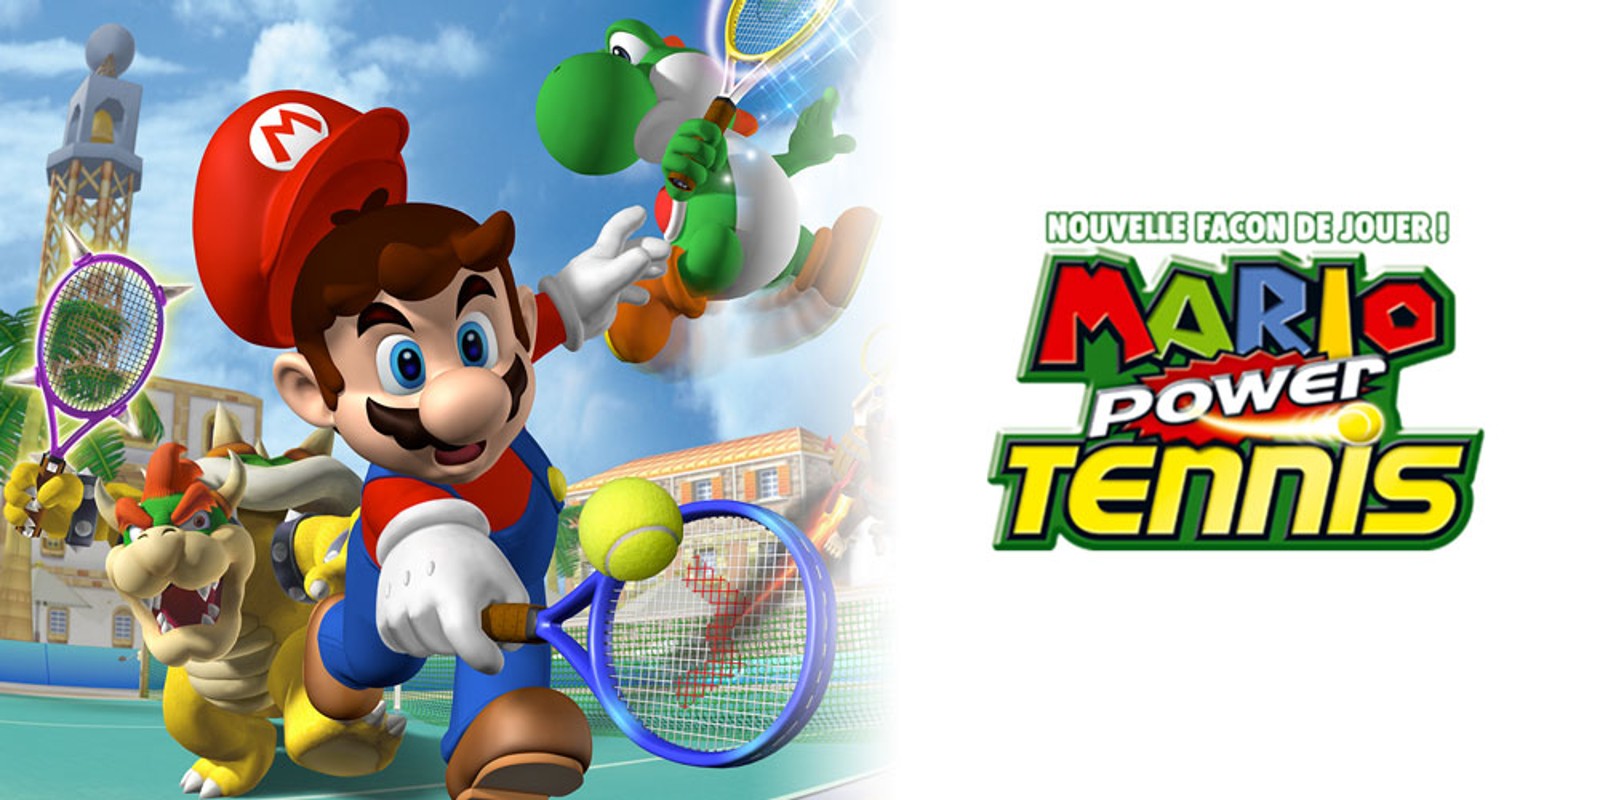 Mario Power Tennis NOUVELLE FAÇON DE JOUER !